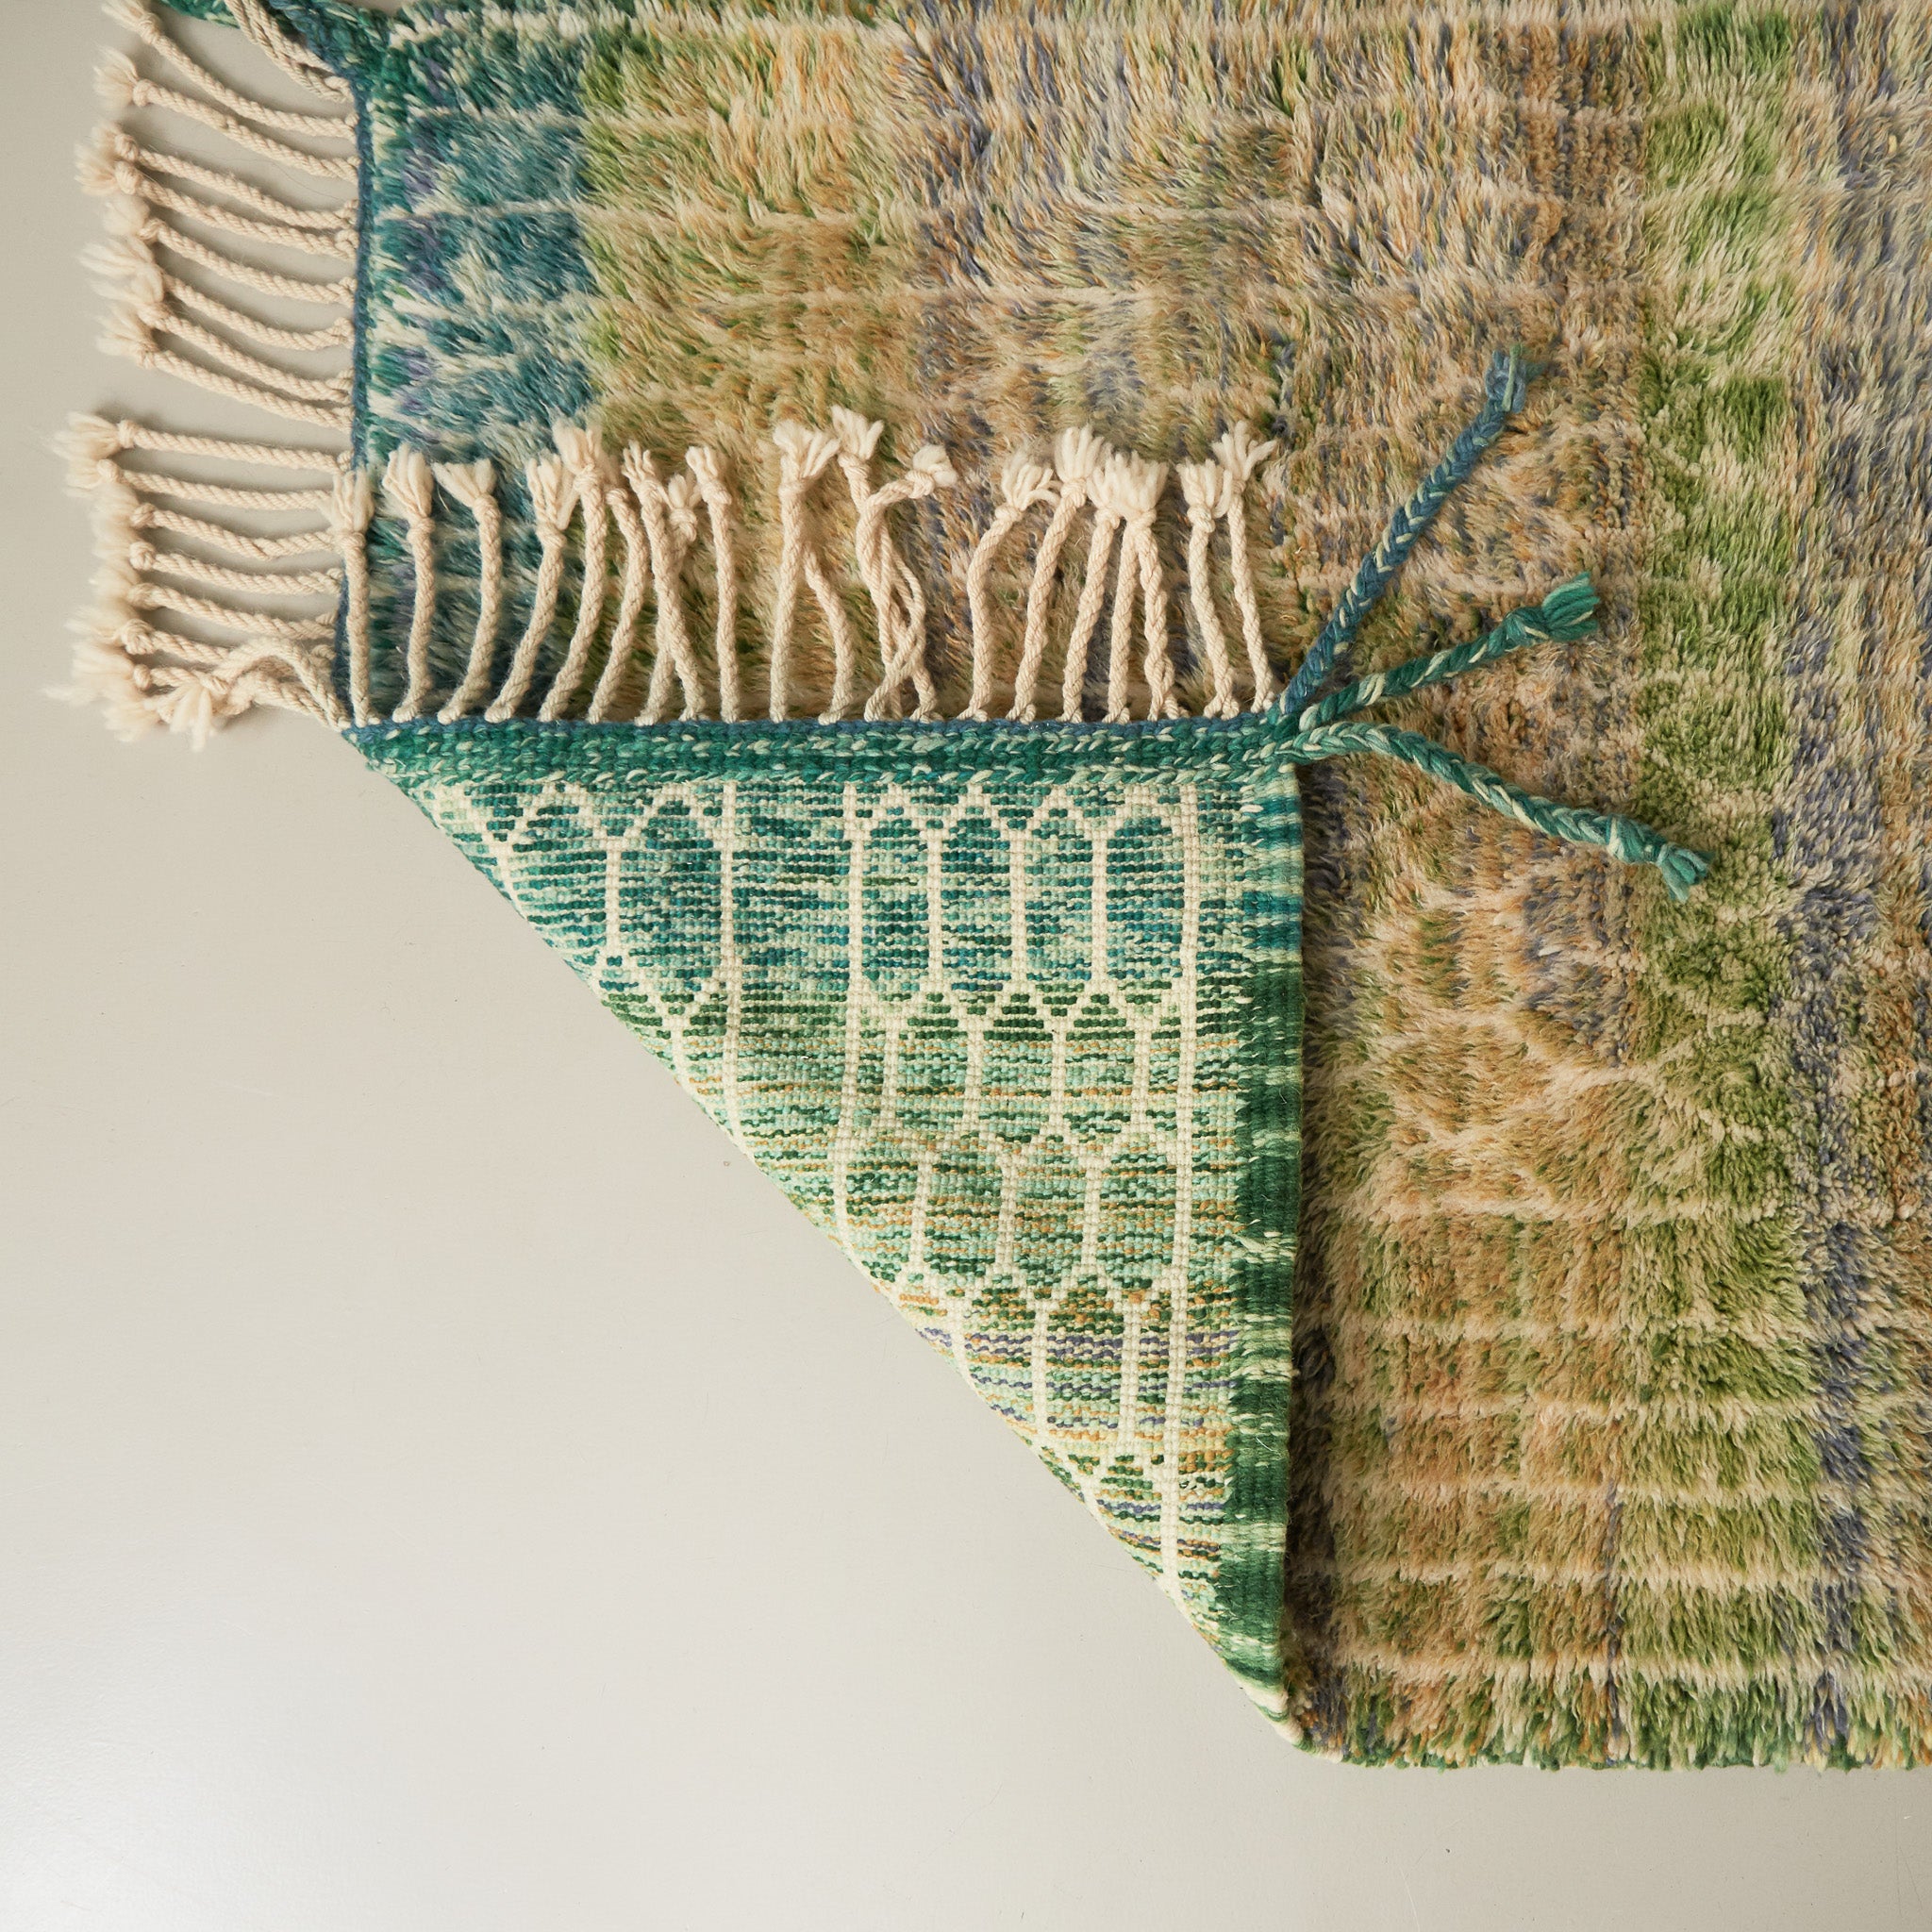 dettaglio della lavorazione di un tappeto beni mrirt per ammirare i nodi ravvicinati di diverse gradazioni di verde